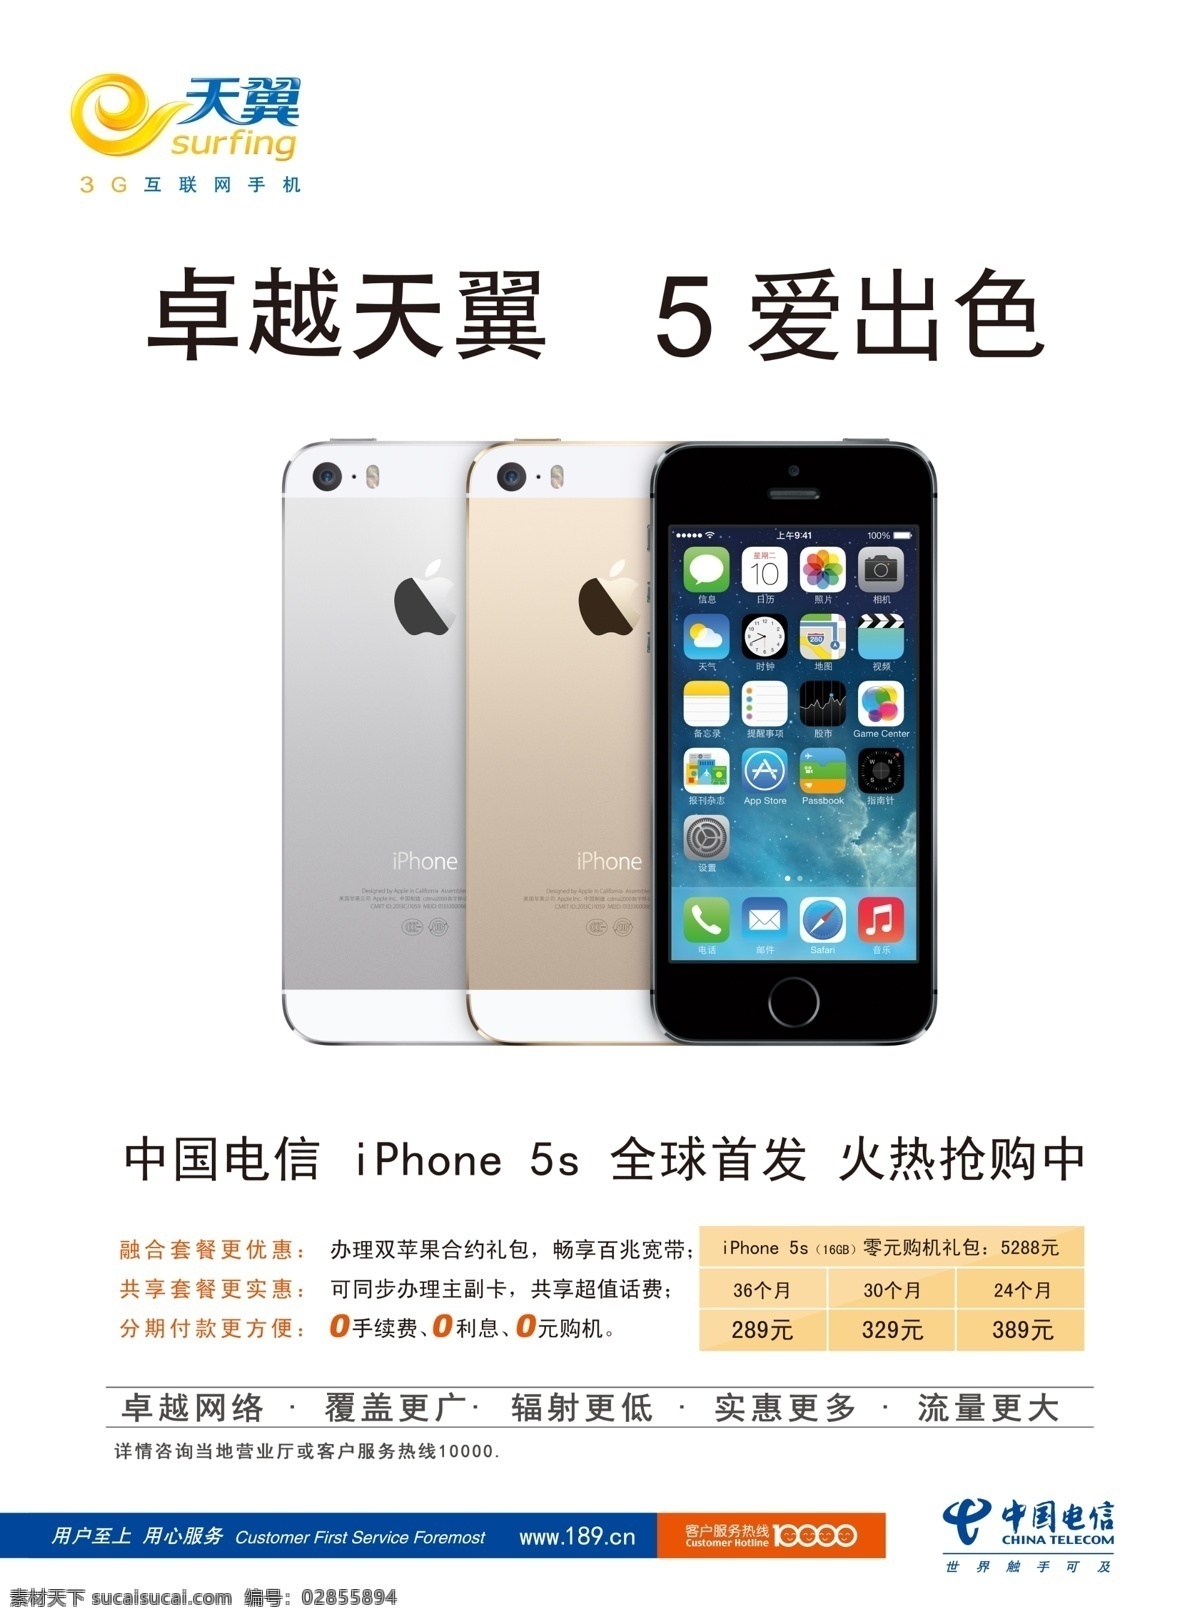 苹果5s 中国电信 天翼 卓越天翼 5爱出色 iphone 5s 苹果 手机 套餐 0元购机 ios 土豪金 广告设计模板 源文件